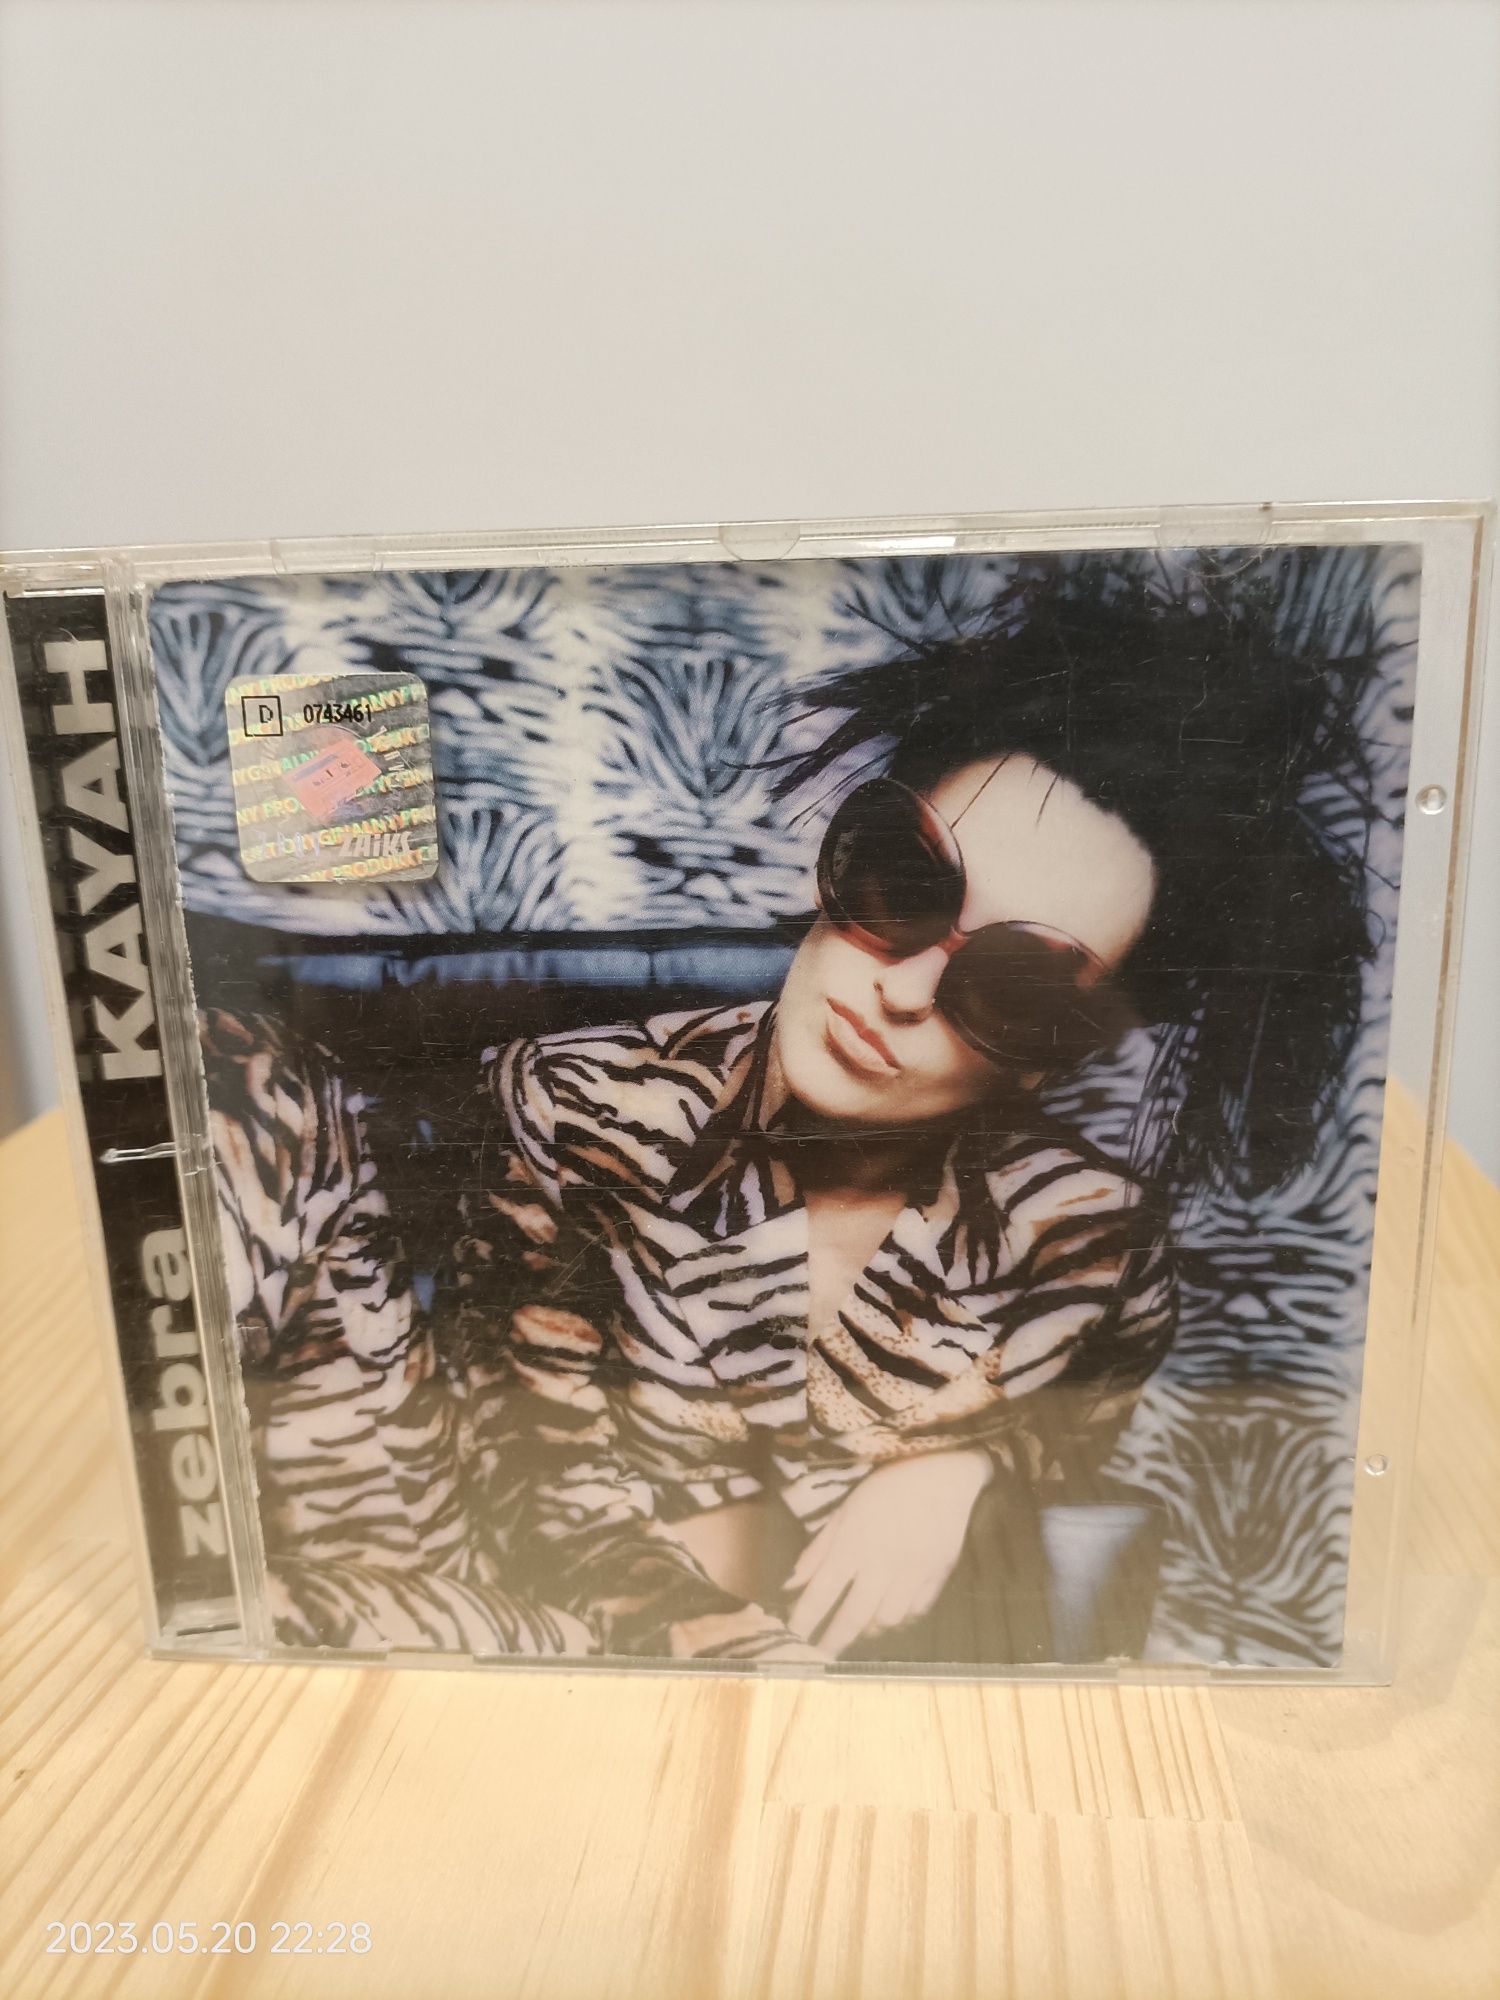 Kayah - Zebra cd